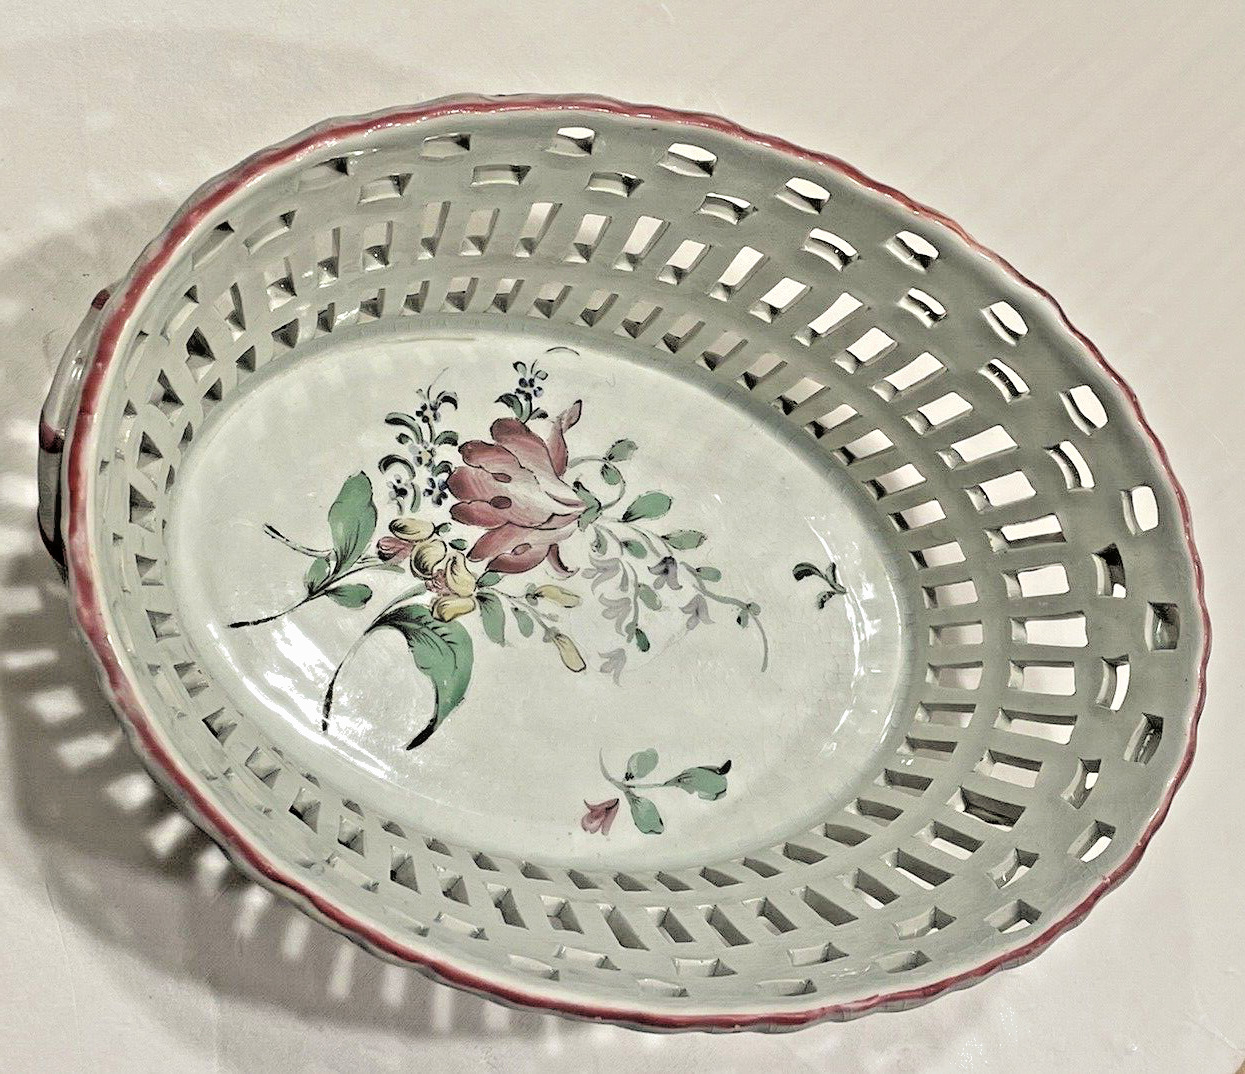 K&G Luneville France Reticulated Porcelain Oval Basket ~Antique EXCELLENT